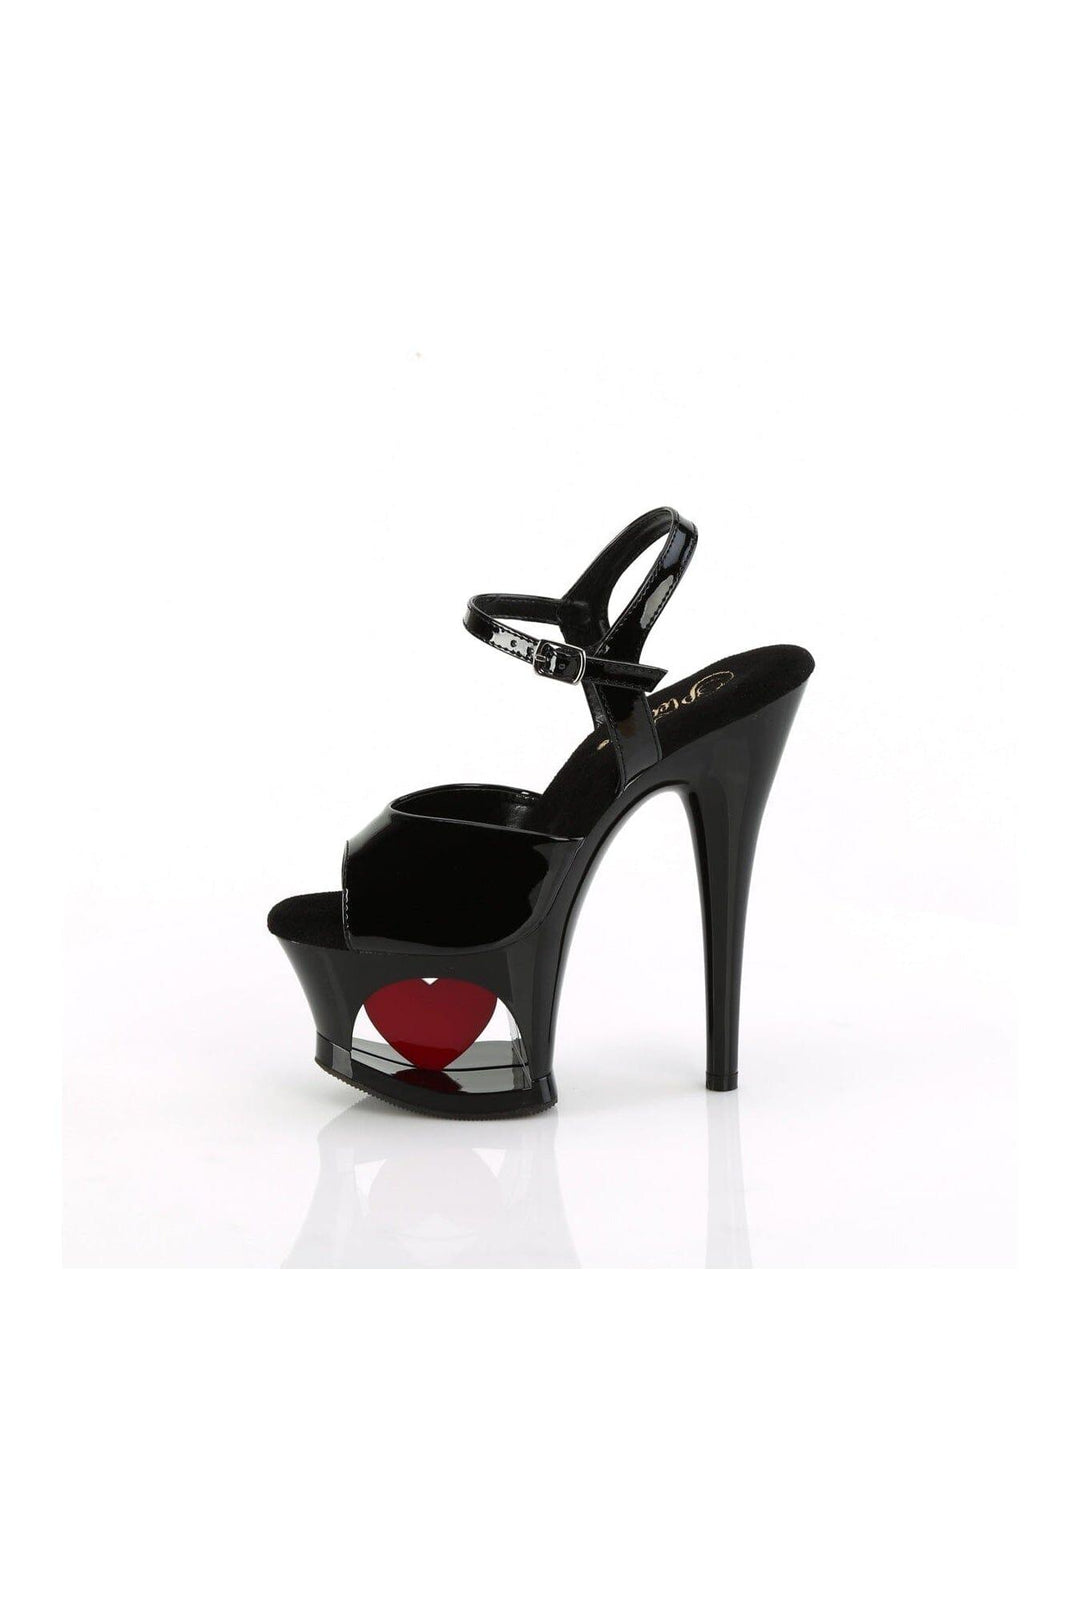 MOON-709H Black Patent Sandal-Sandals-Pleaser-SEXYSHOES.COM